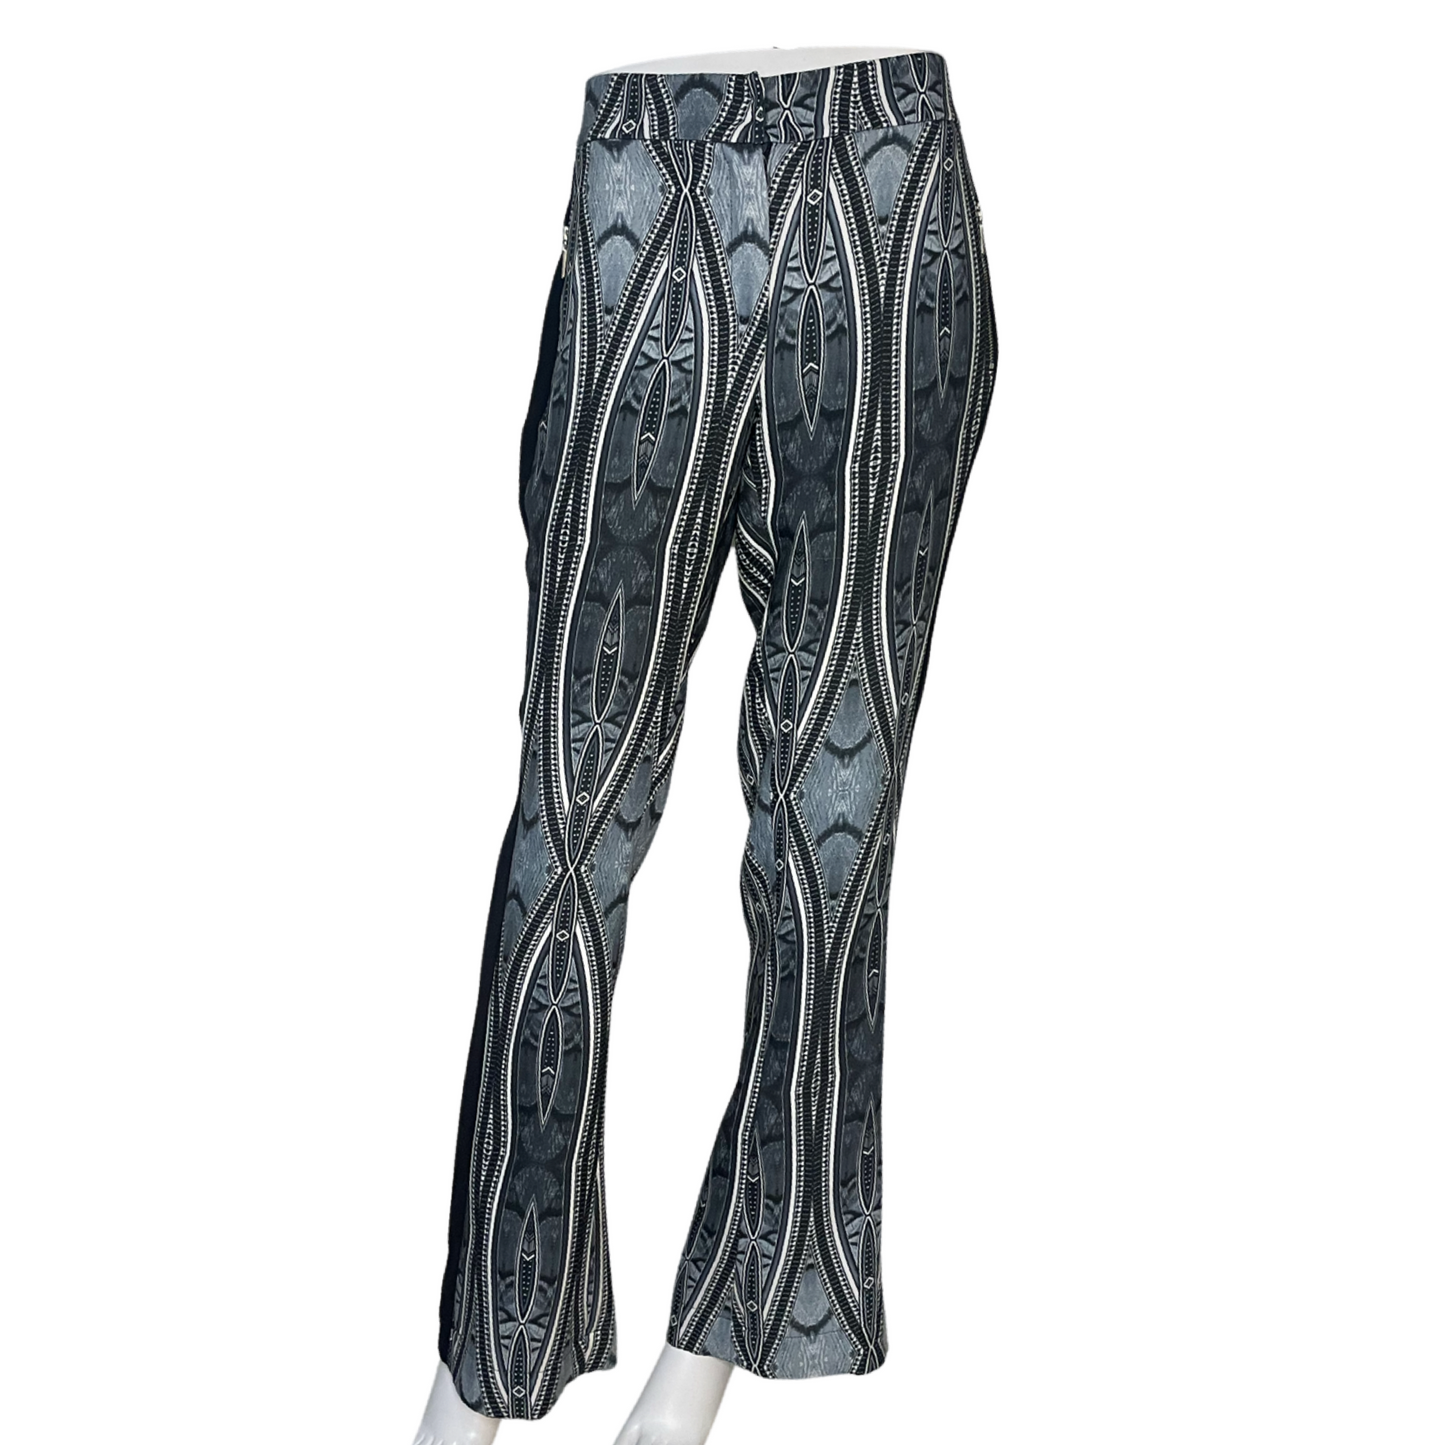 Pantalon Brooksfield Zipper Azul - Talla M